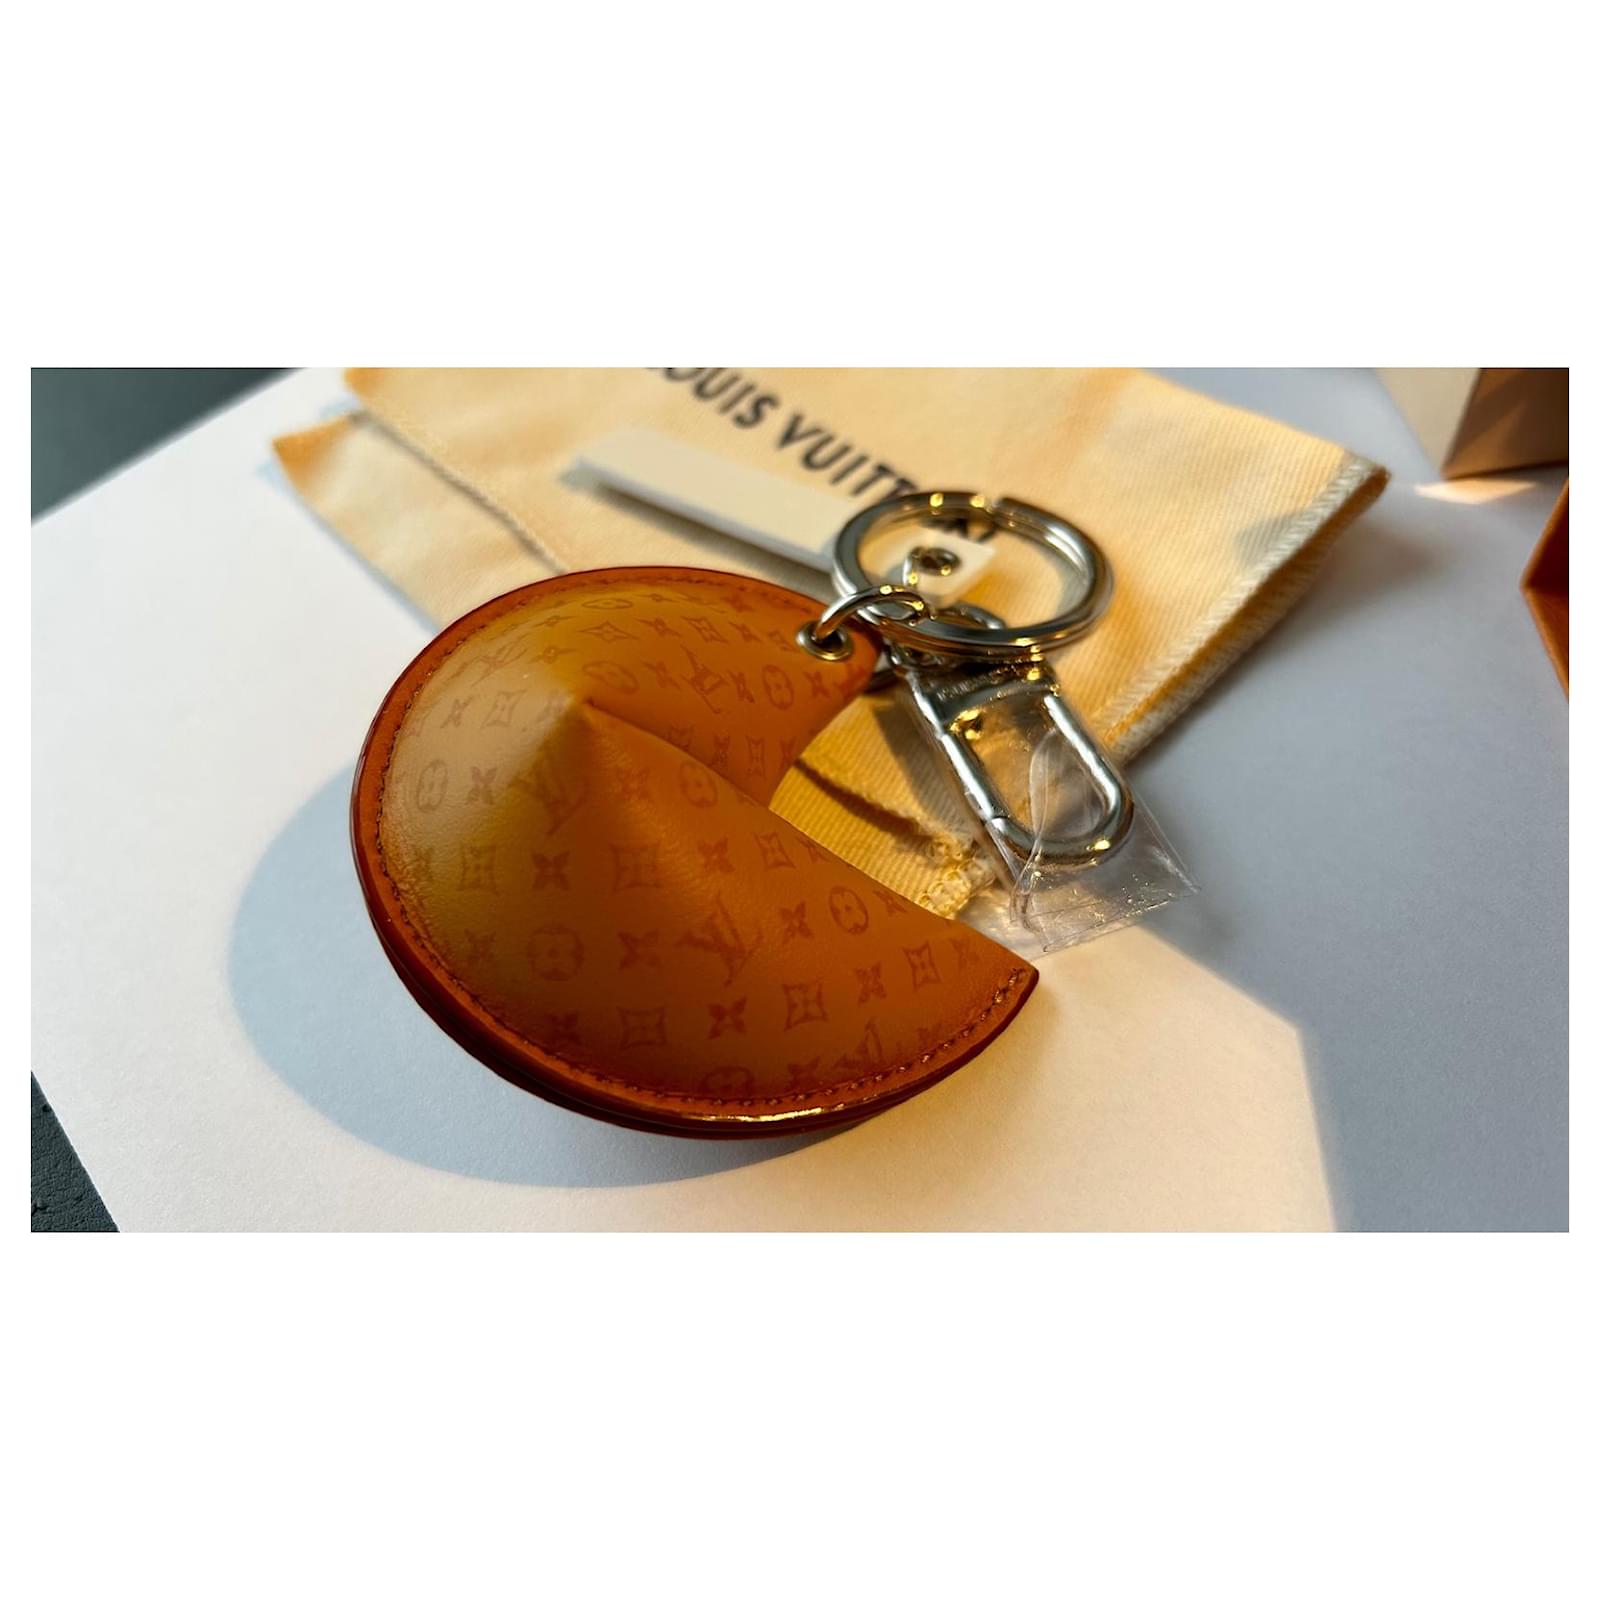 El bolso de galleta de la fortuna de Louis Vuitton está a la venta